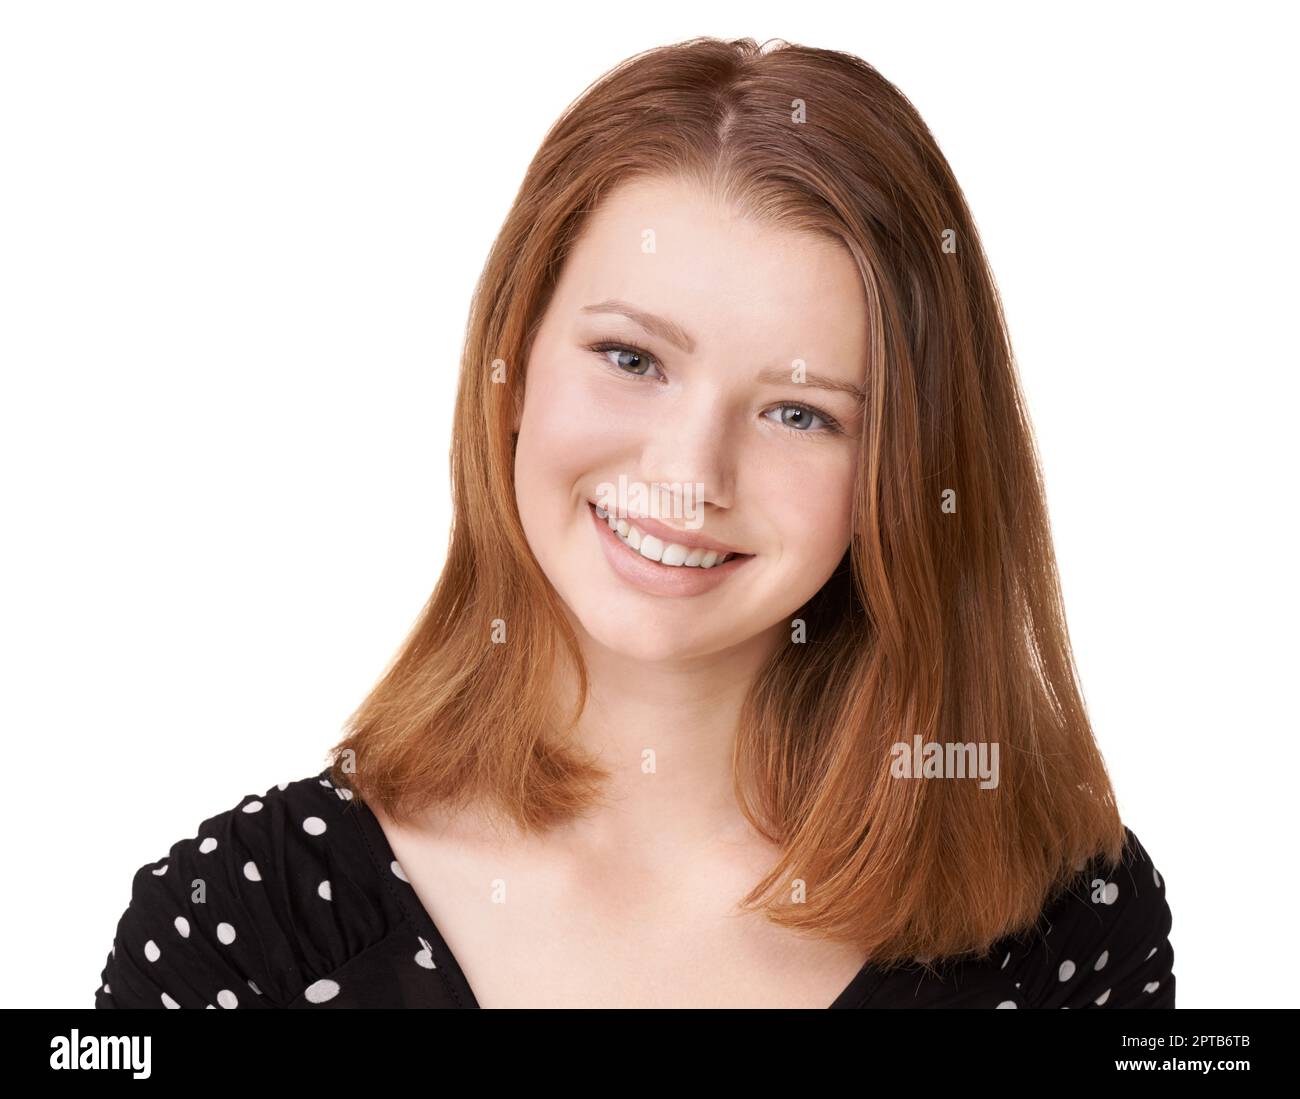 Beauté saine. Portrait studio d'une adolescente confiante isolée sur blanc Banque D'Images